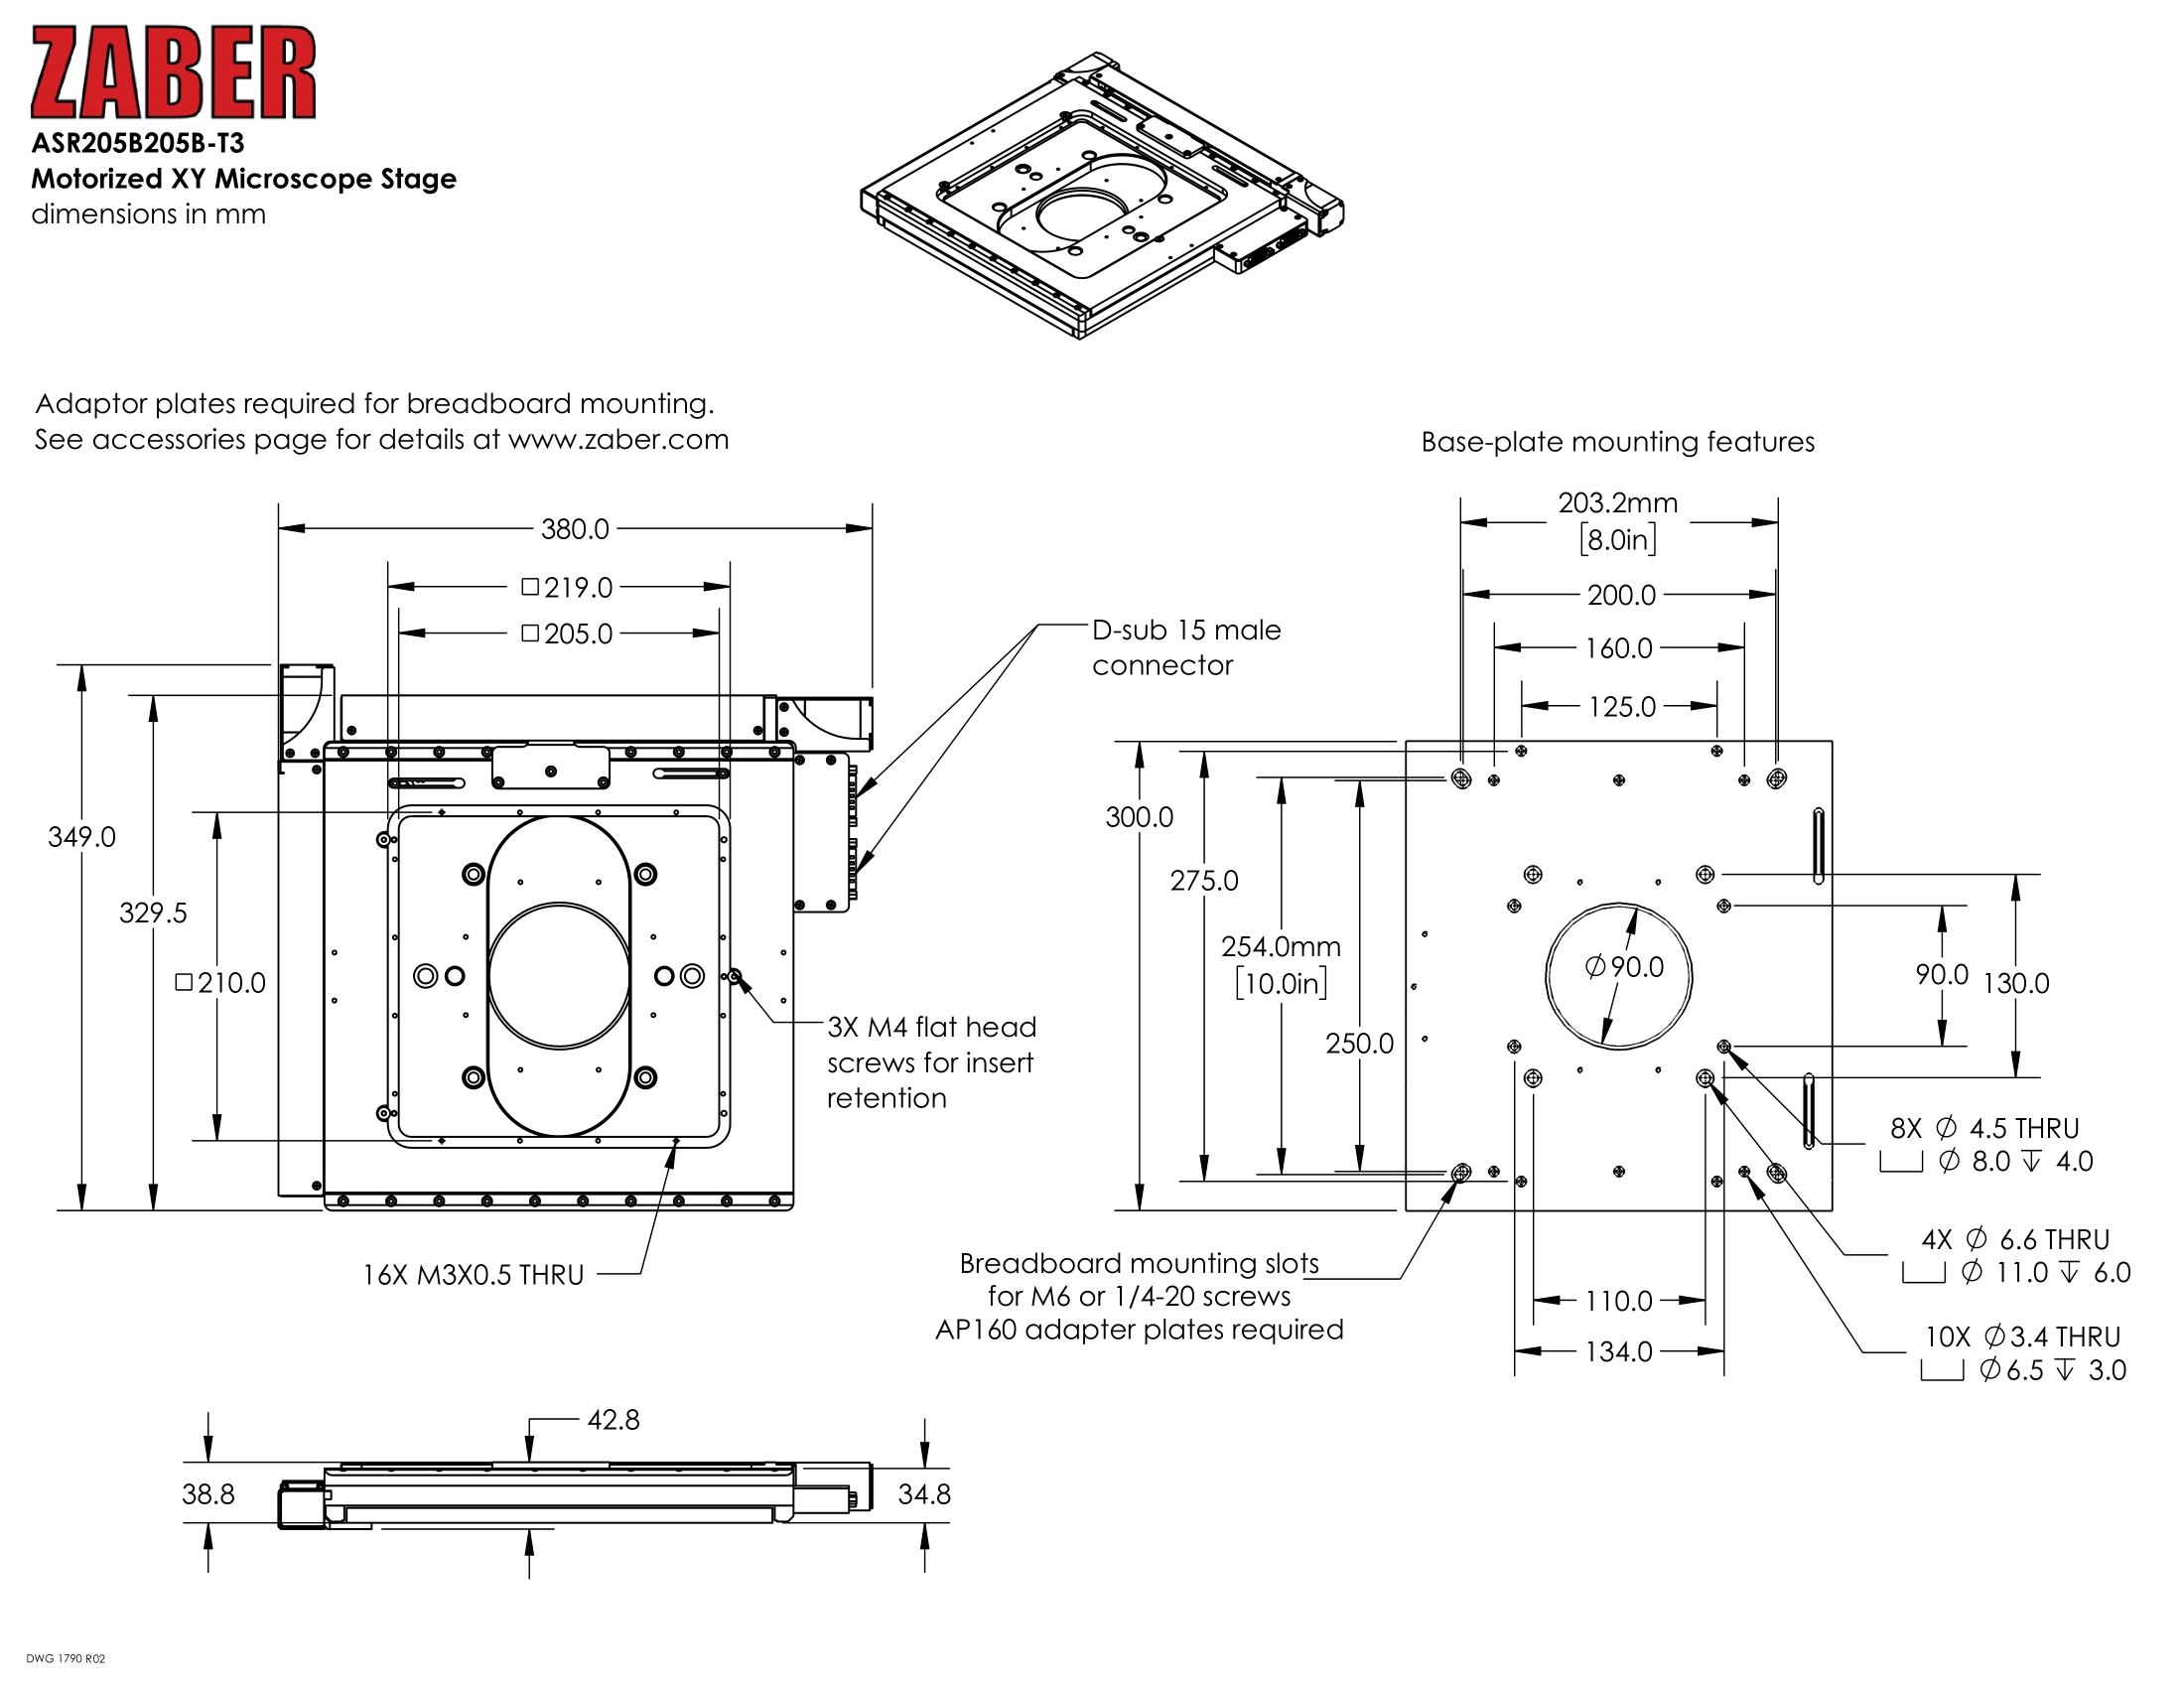 ASR User's Manual - Zaber